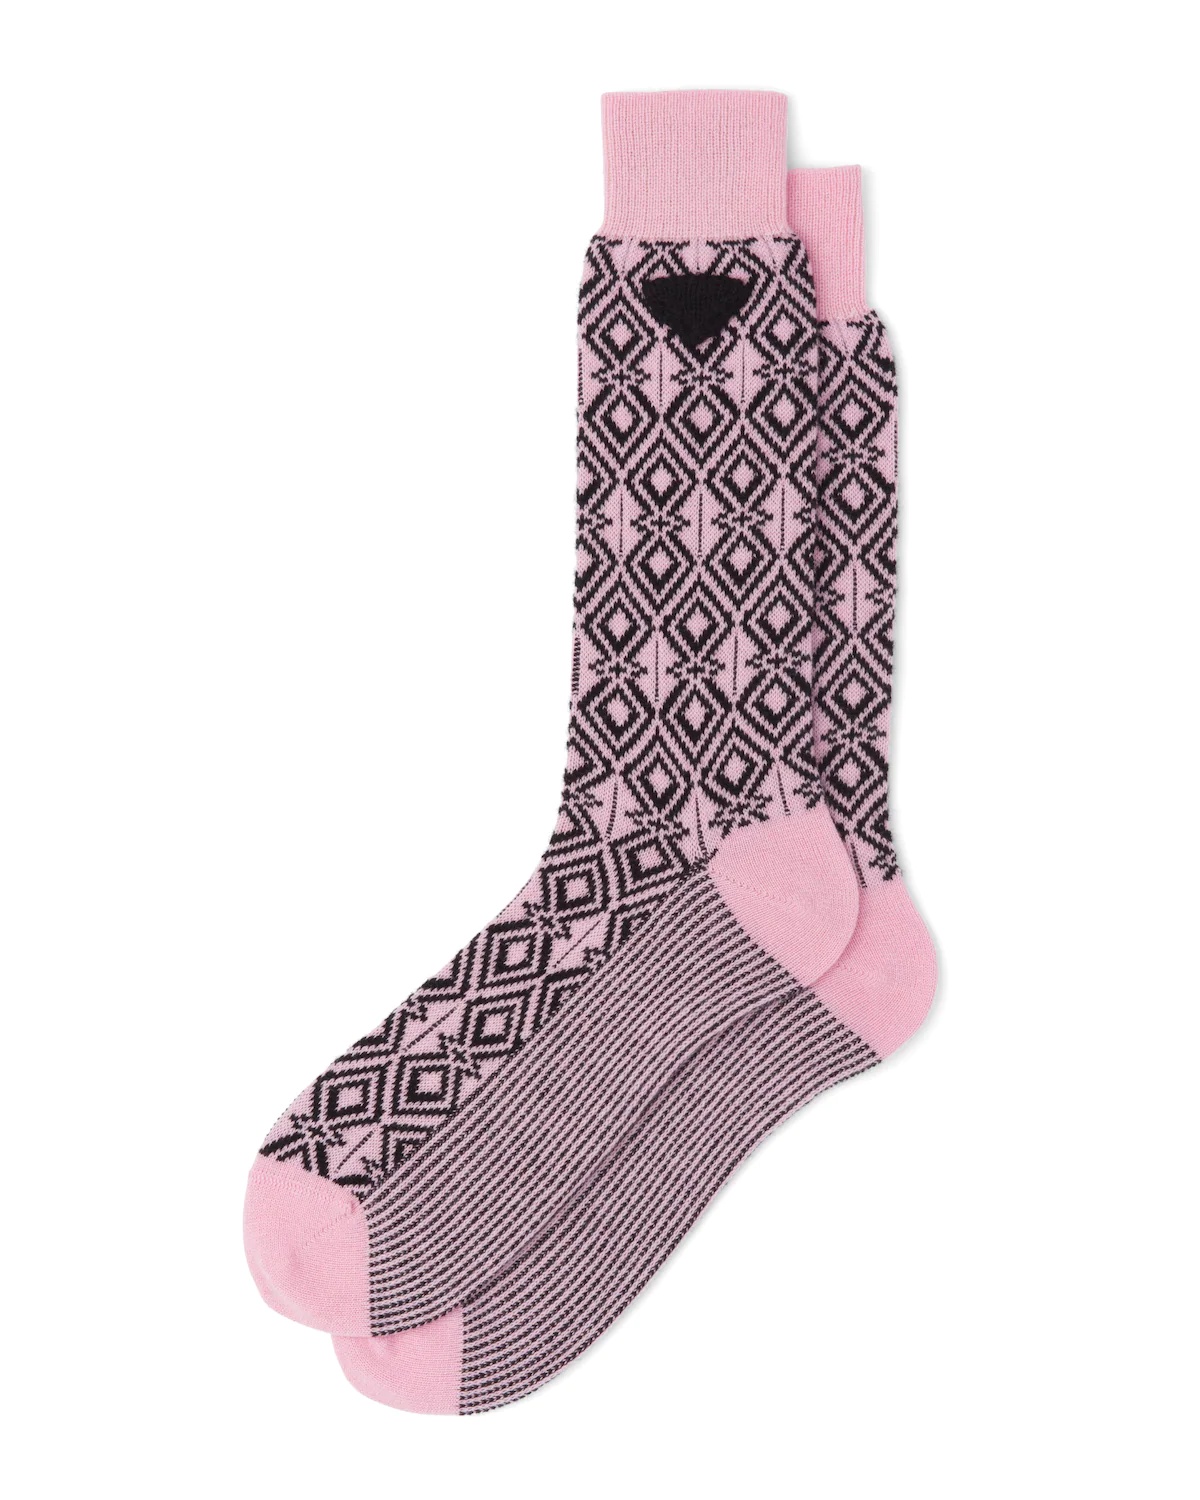 Cashmere ankle socks - 1